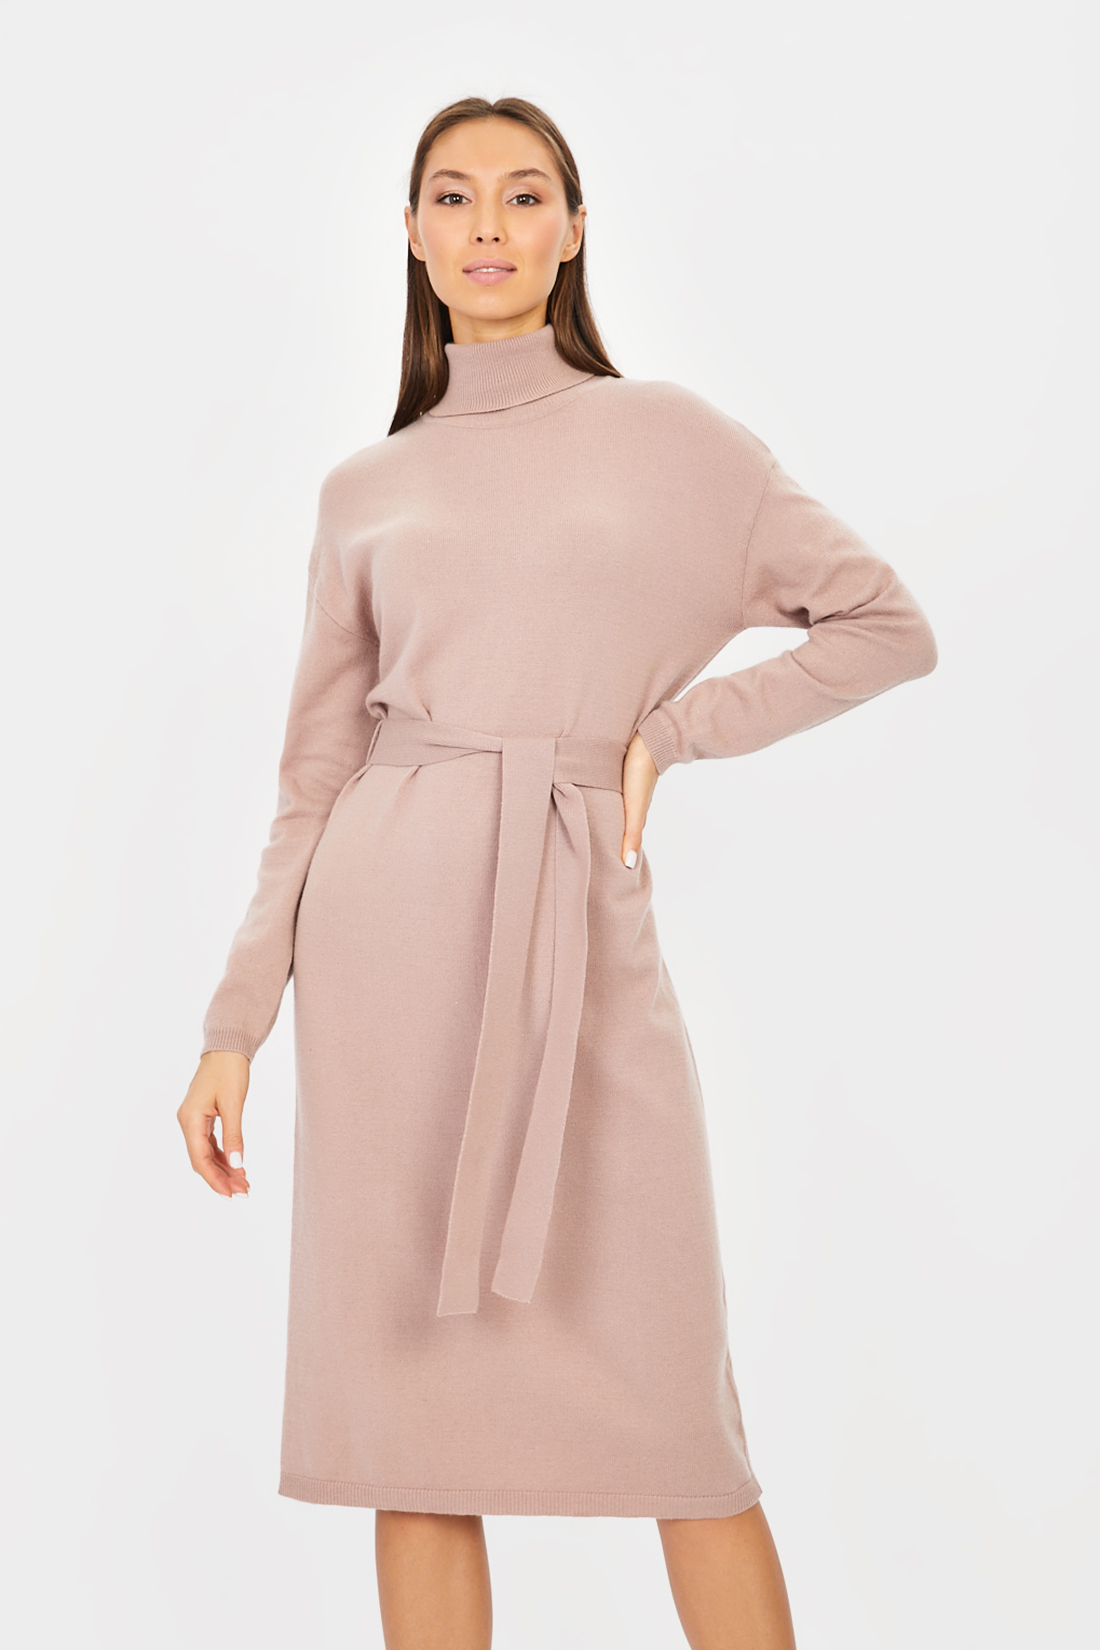 Платье (арт. baon B451505), размер L, цвет розовый Платье (арт. baon B451505) - фото 5